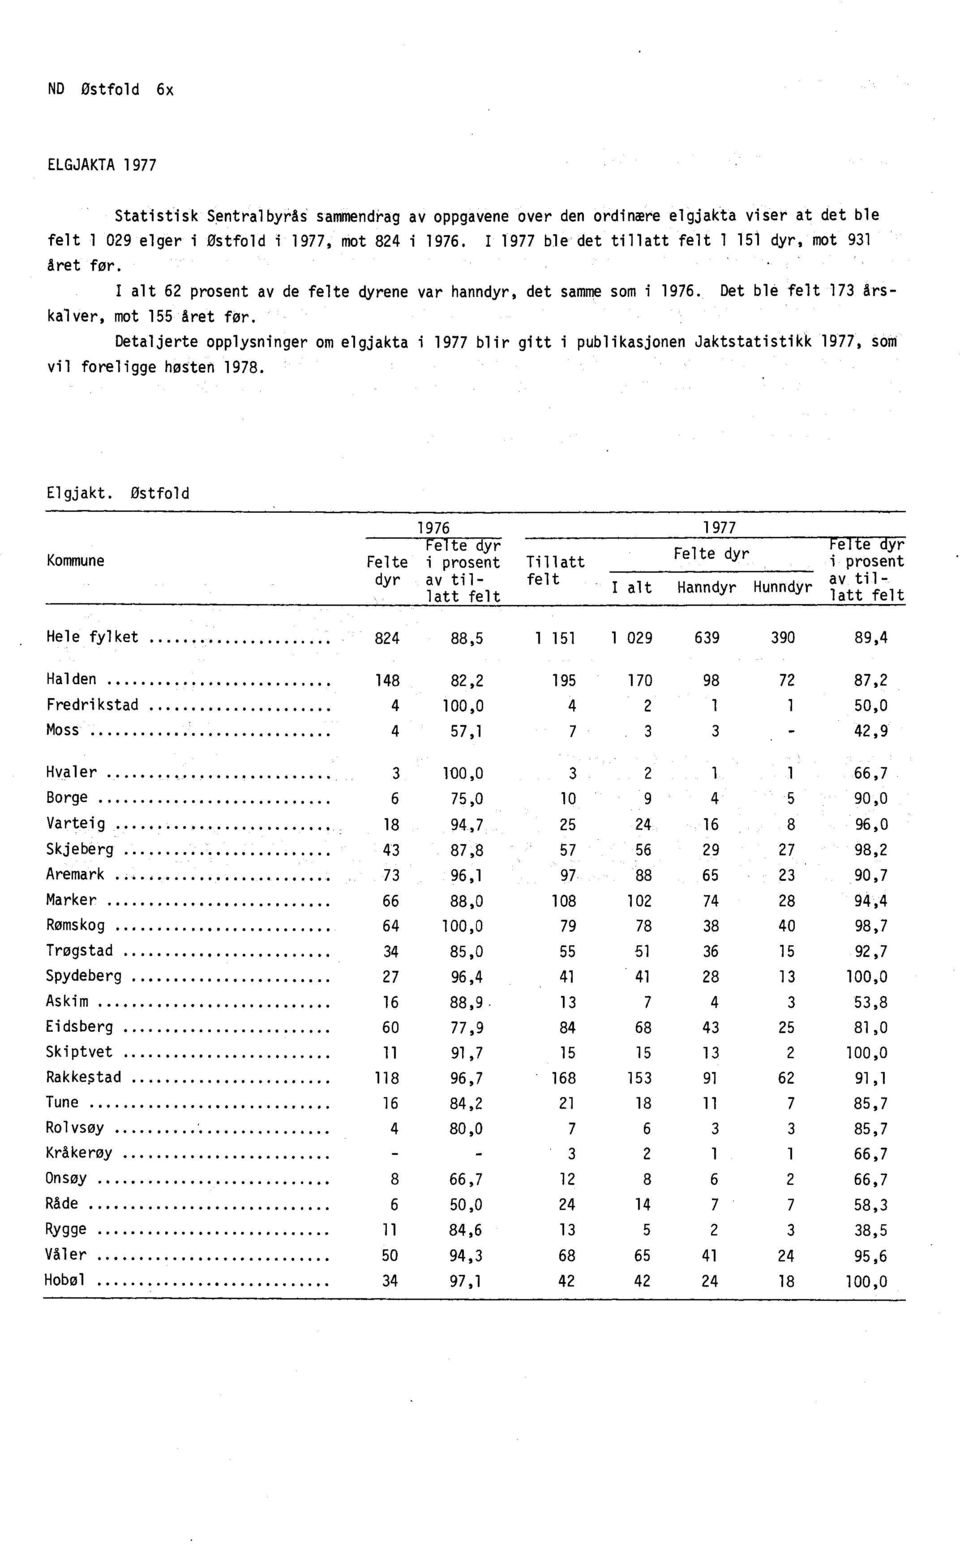 Detaljerte opplysninger om elgjakta i 1977 blir gitt i publikasjonen Jaktstatistikk 1977, som vil foreligge høsten 1978. Elgjakt.